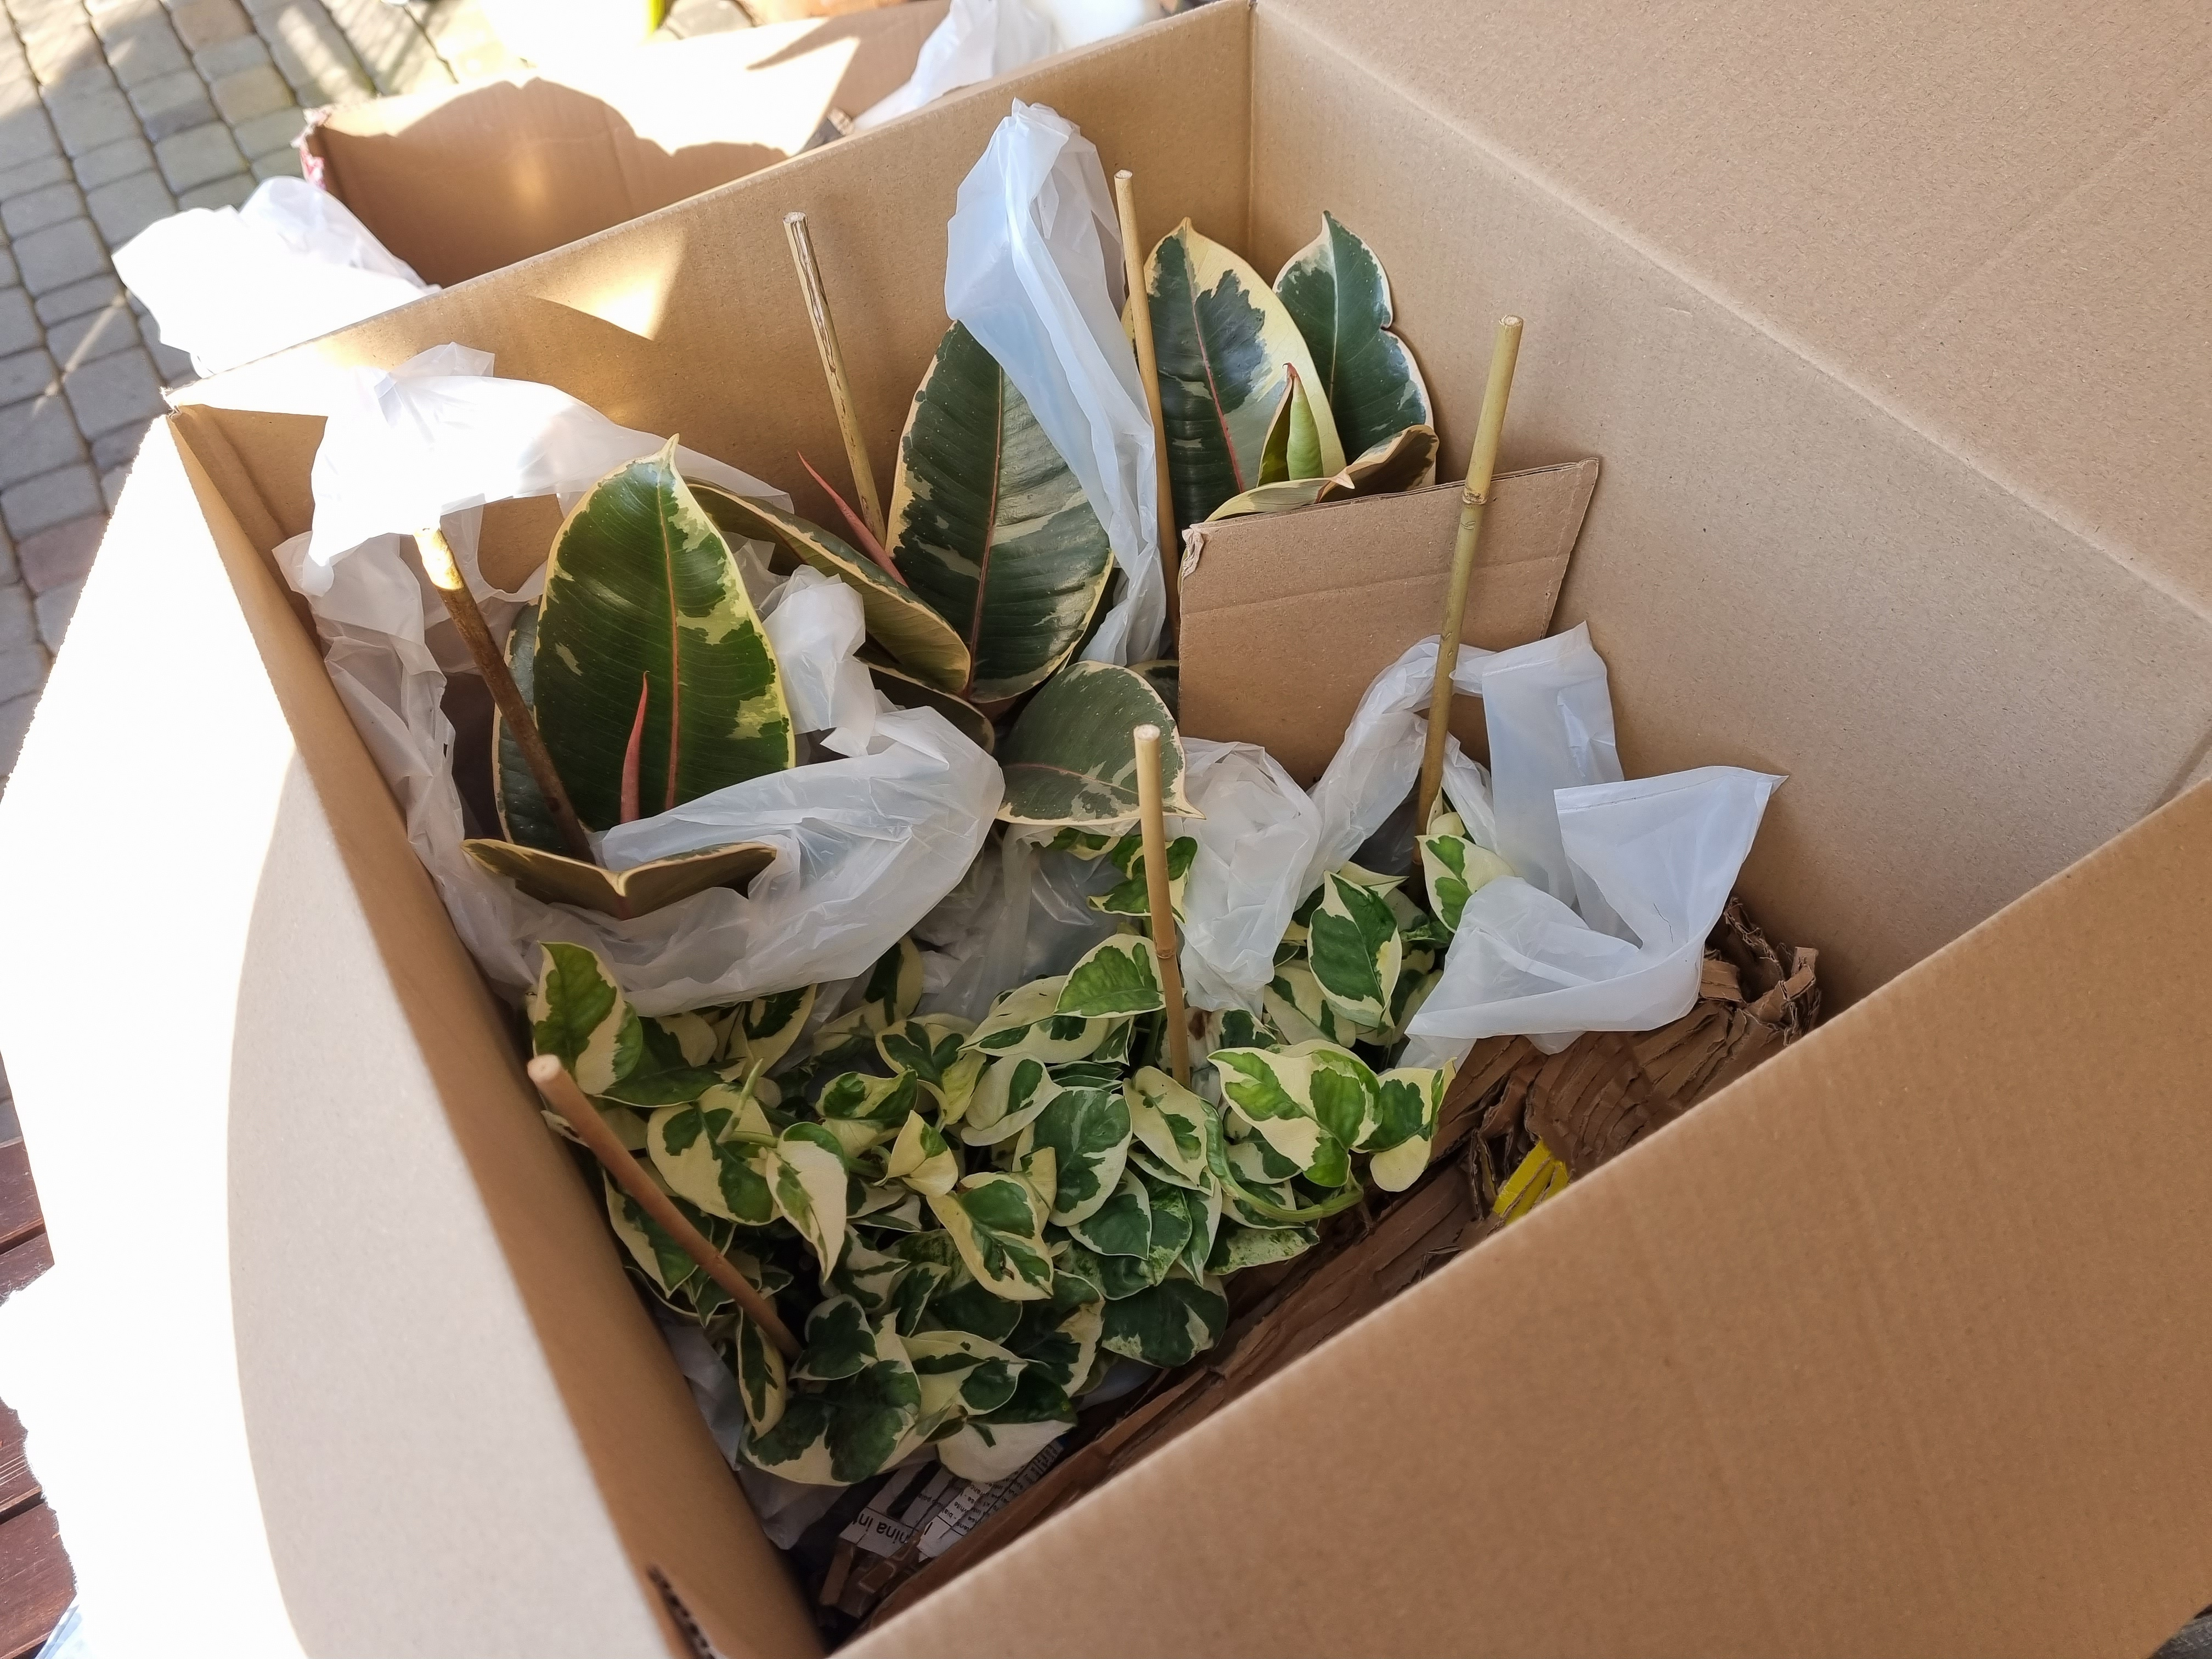 pakowanie roślin_jak pakujemy rośliny_wysyłka roślin_jak wysyłamy rośliny_doogrodu_wysyłka roślin kurierem.jpg